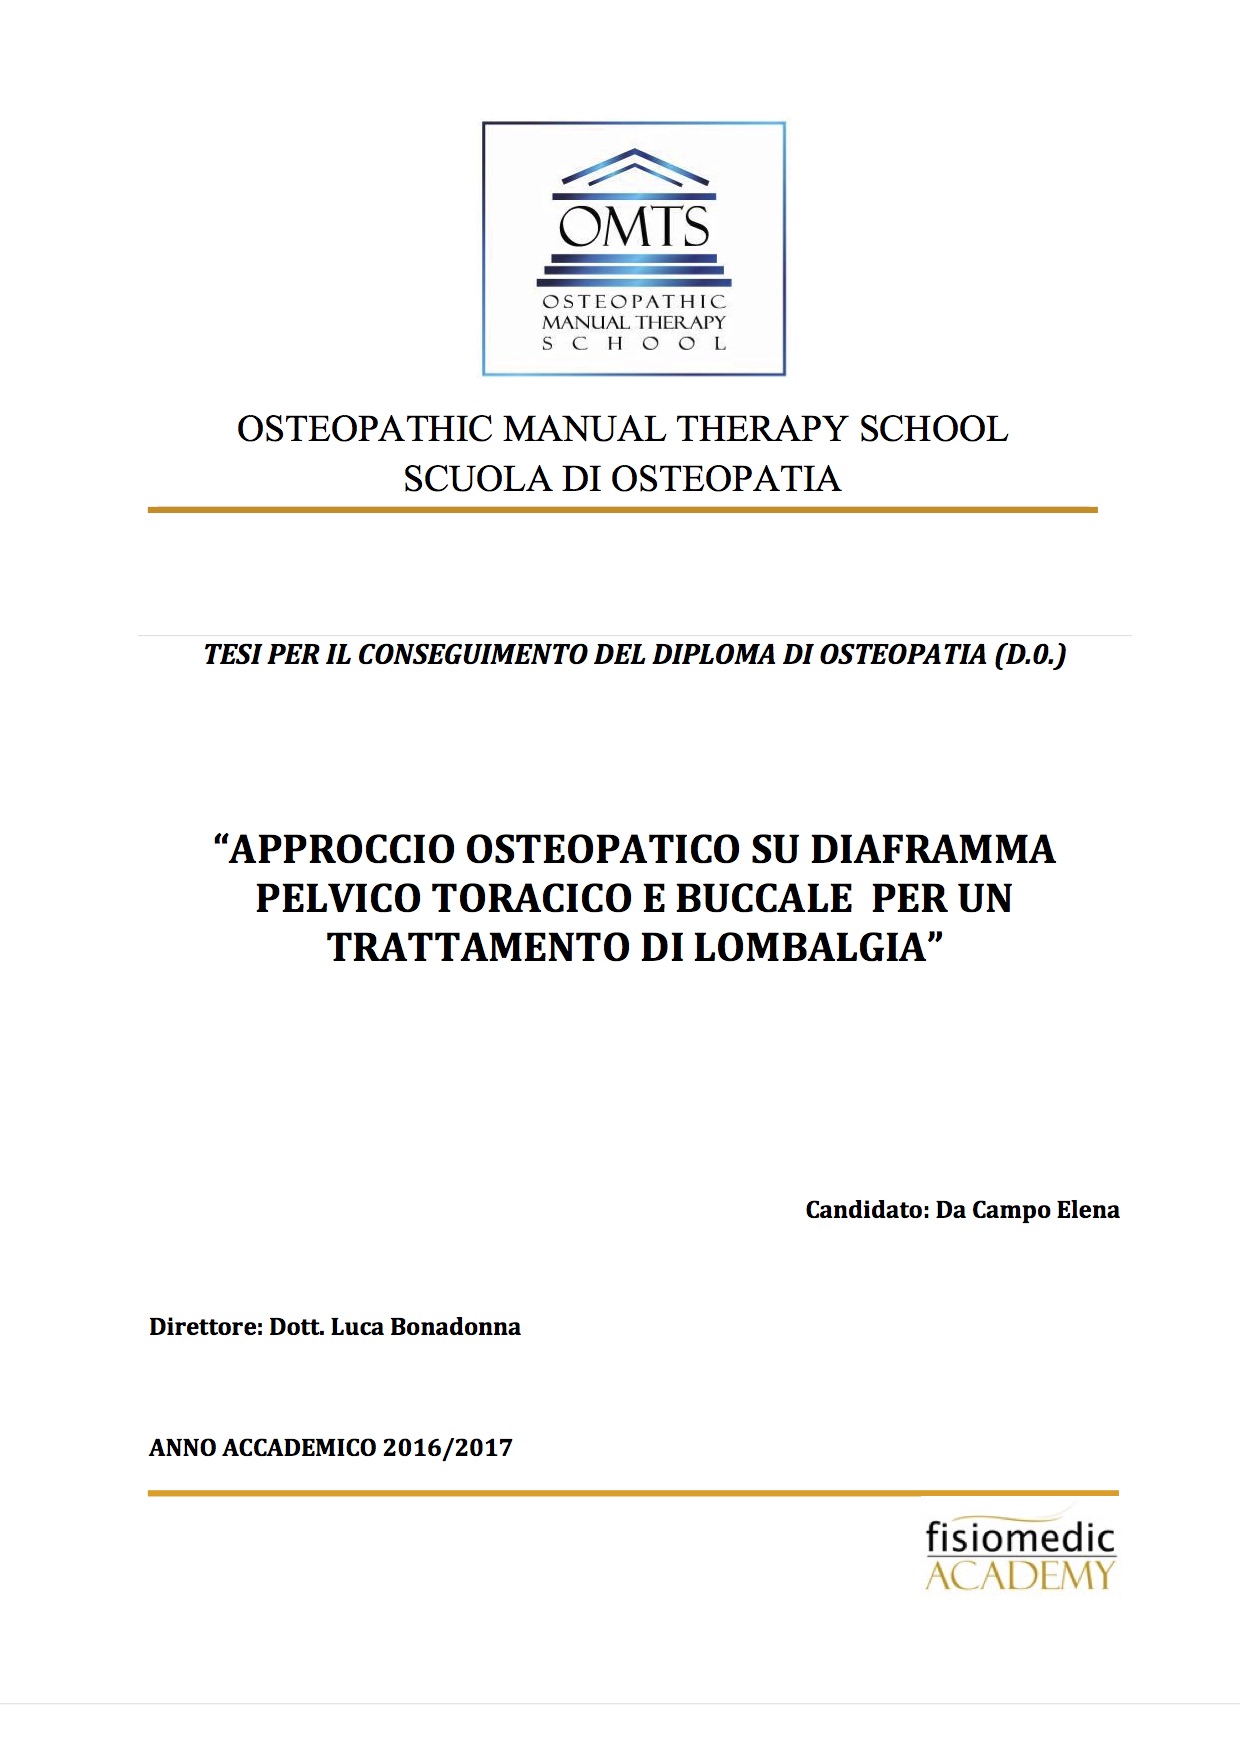 Elena Da Campo Tesi Diploma Osteopatia 2017